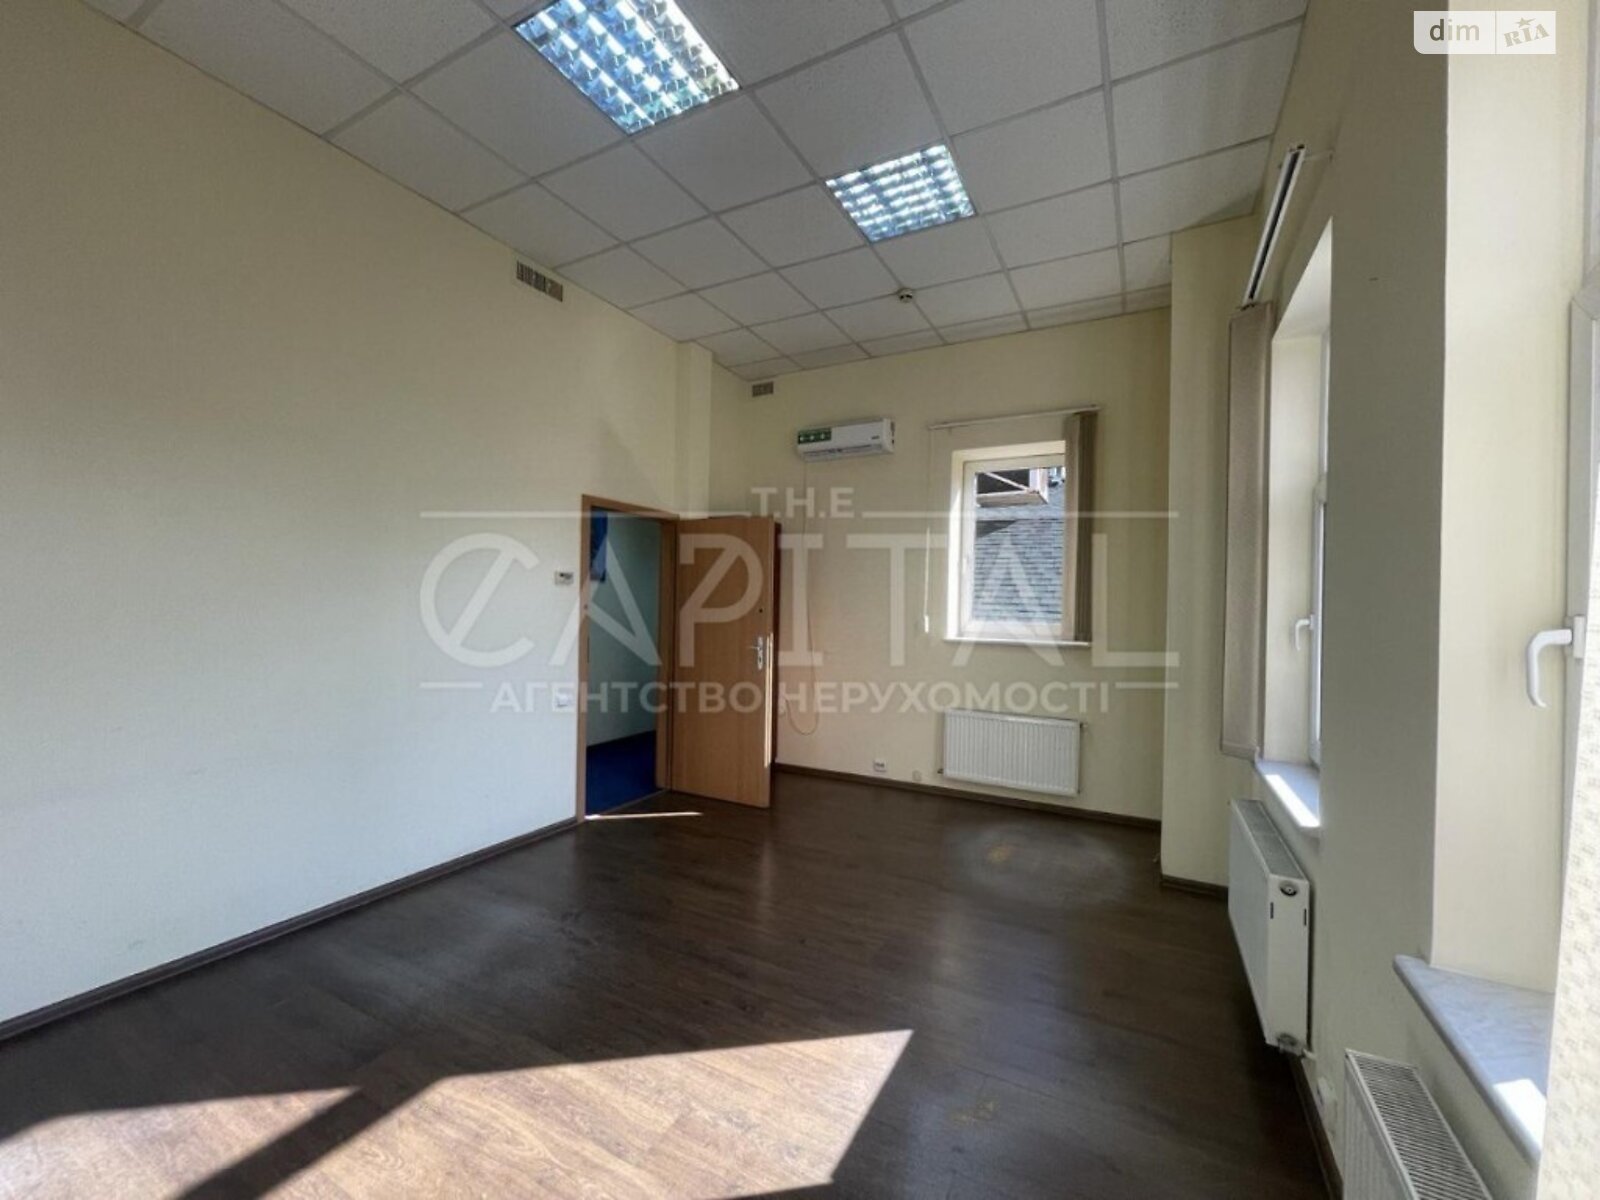 Аренда офисного помещения в Киеве, Саксаганского улица 46Б, помещений - 6, этаж - 6 фото 1